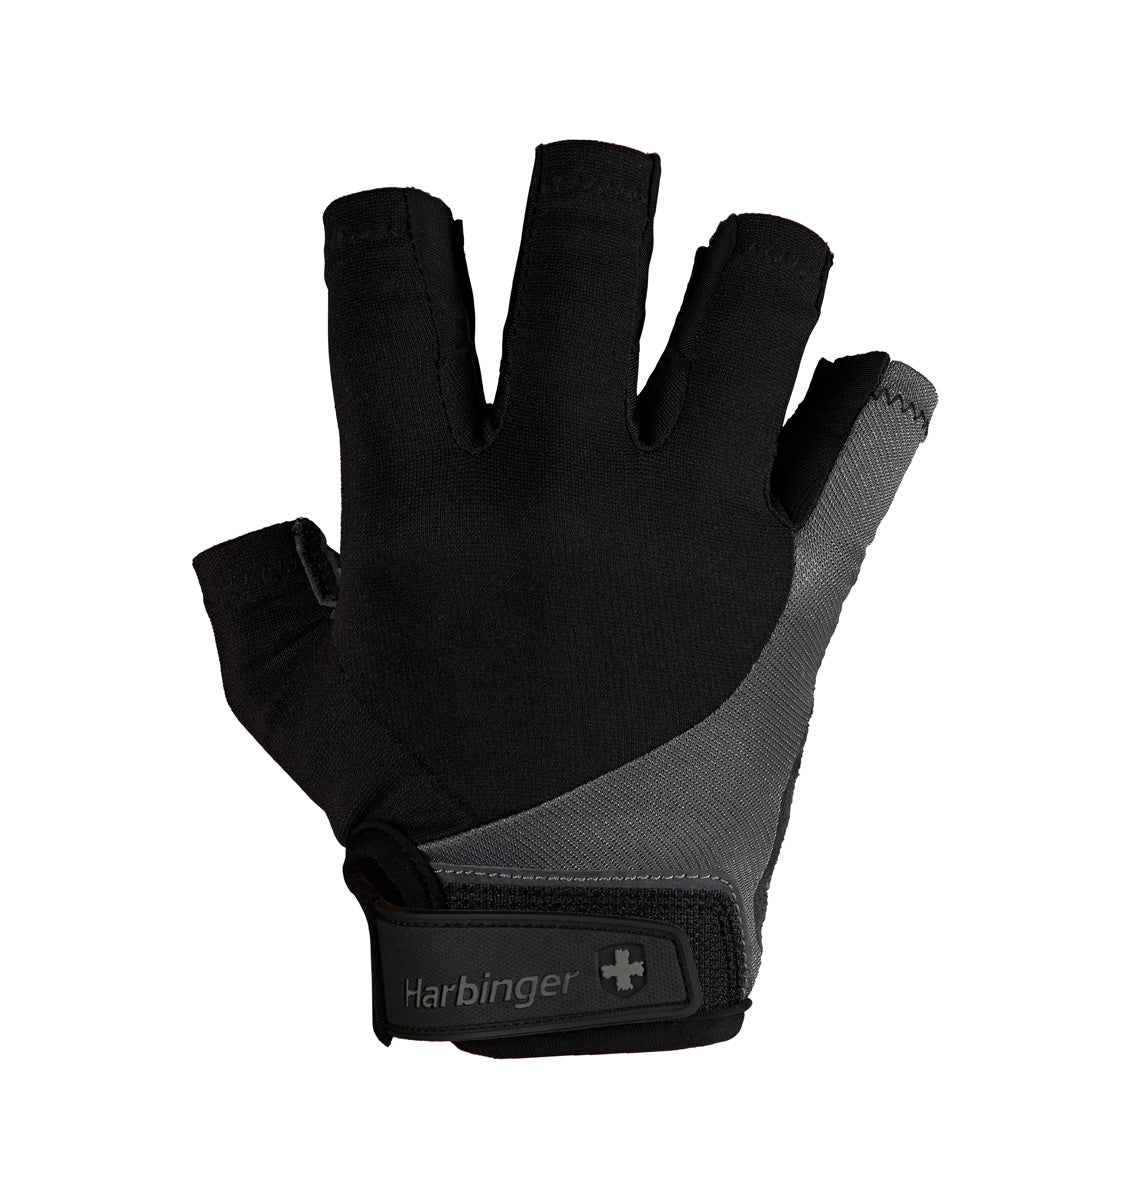 Harbinger Bioflex Elite Glove - 1